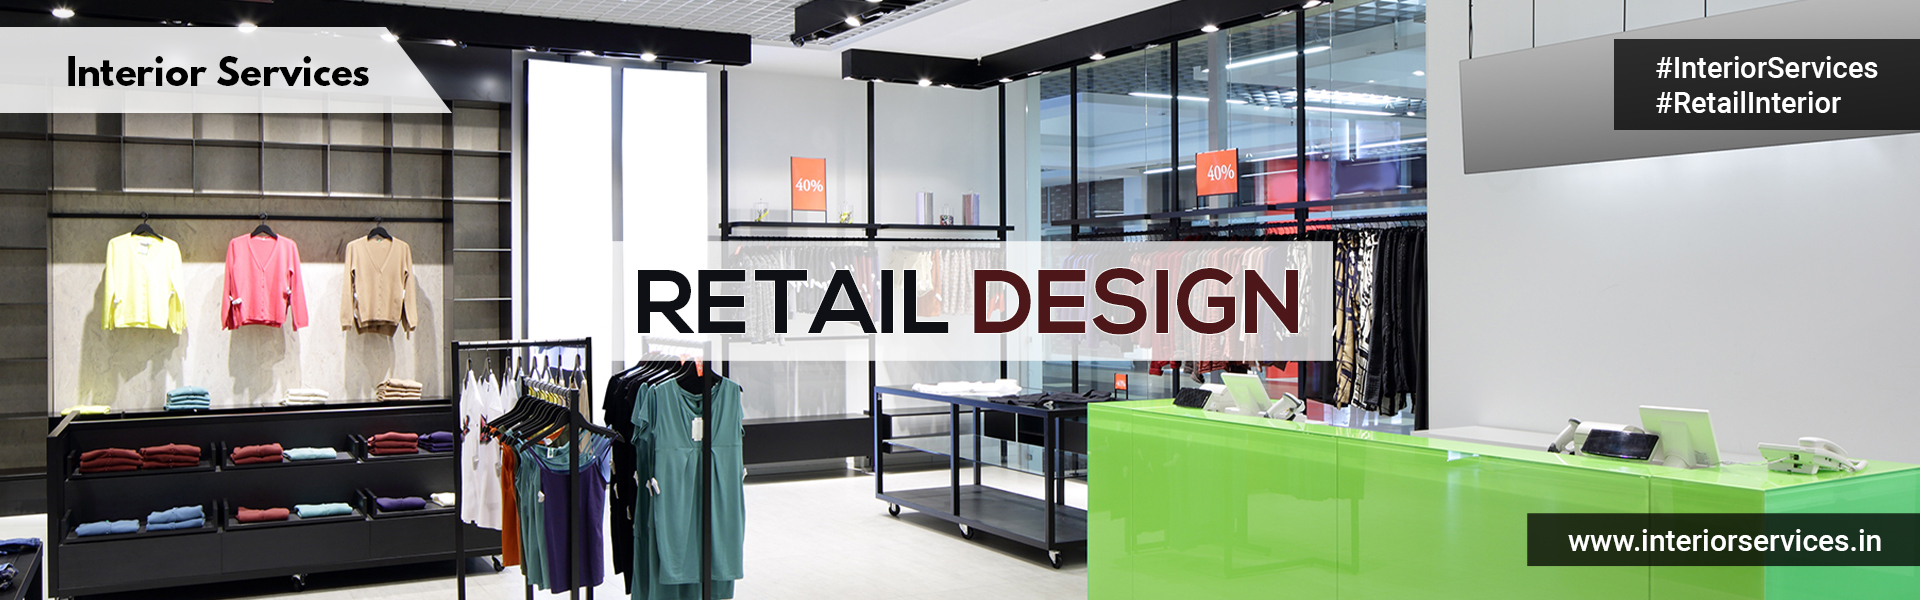 Interior Services Retail Design Image